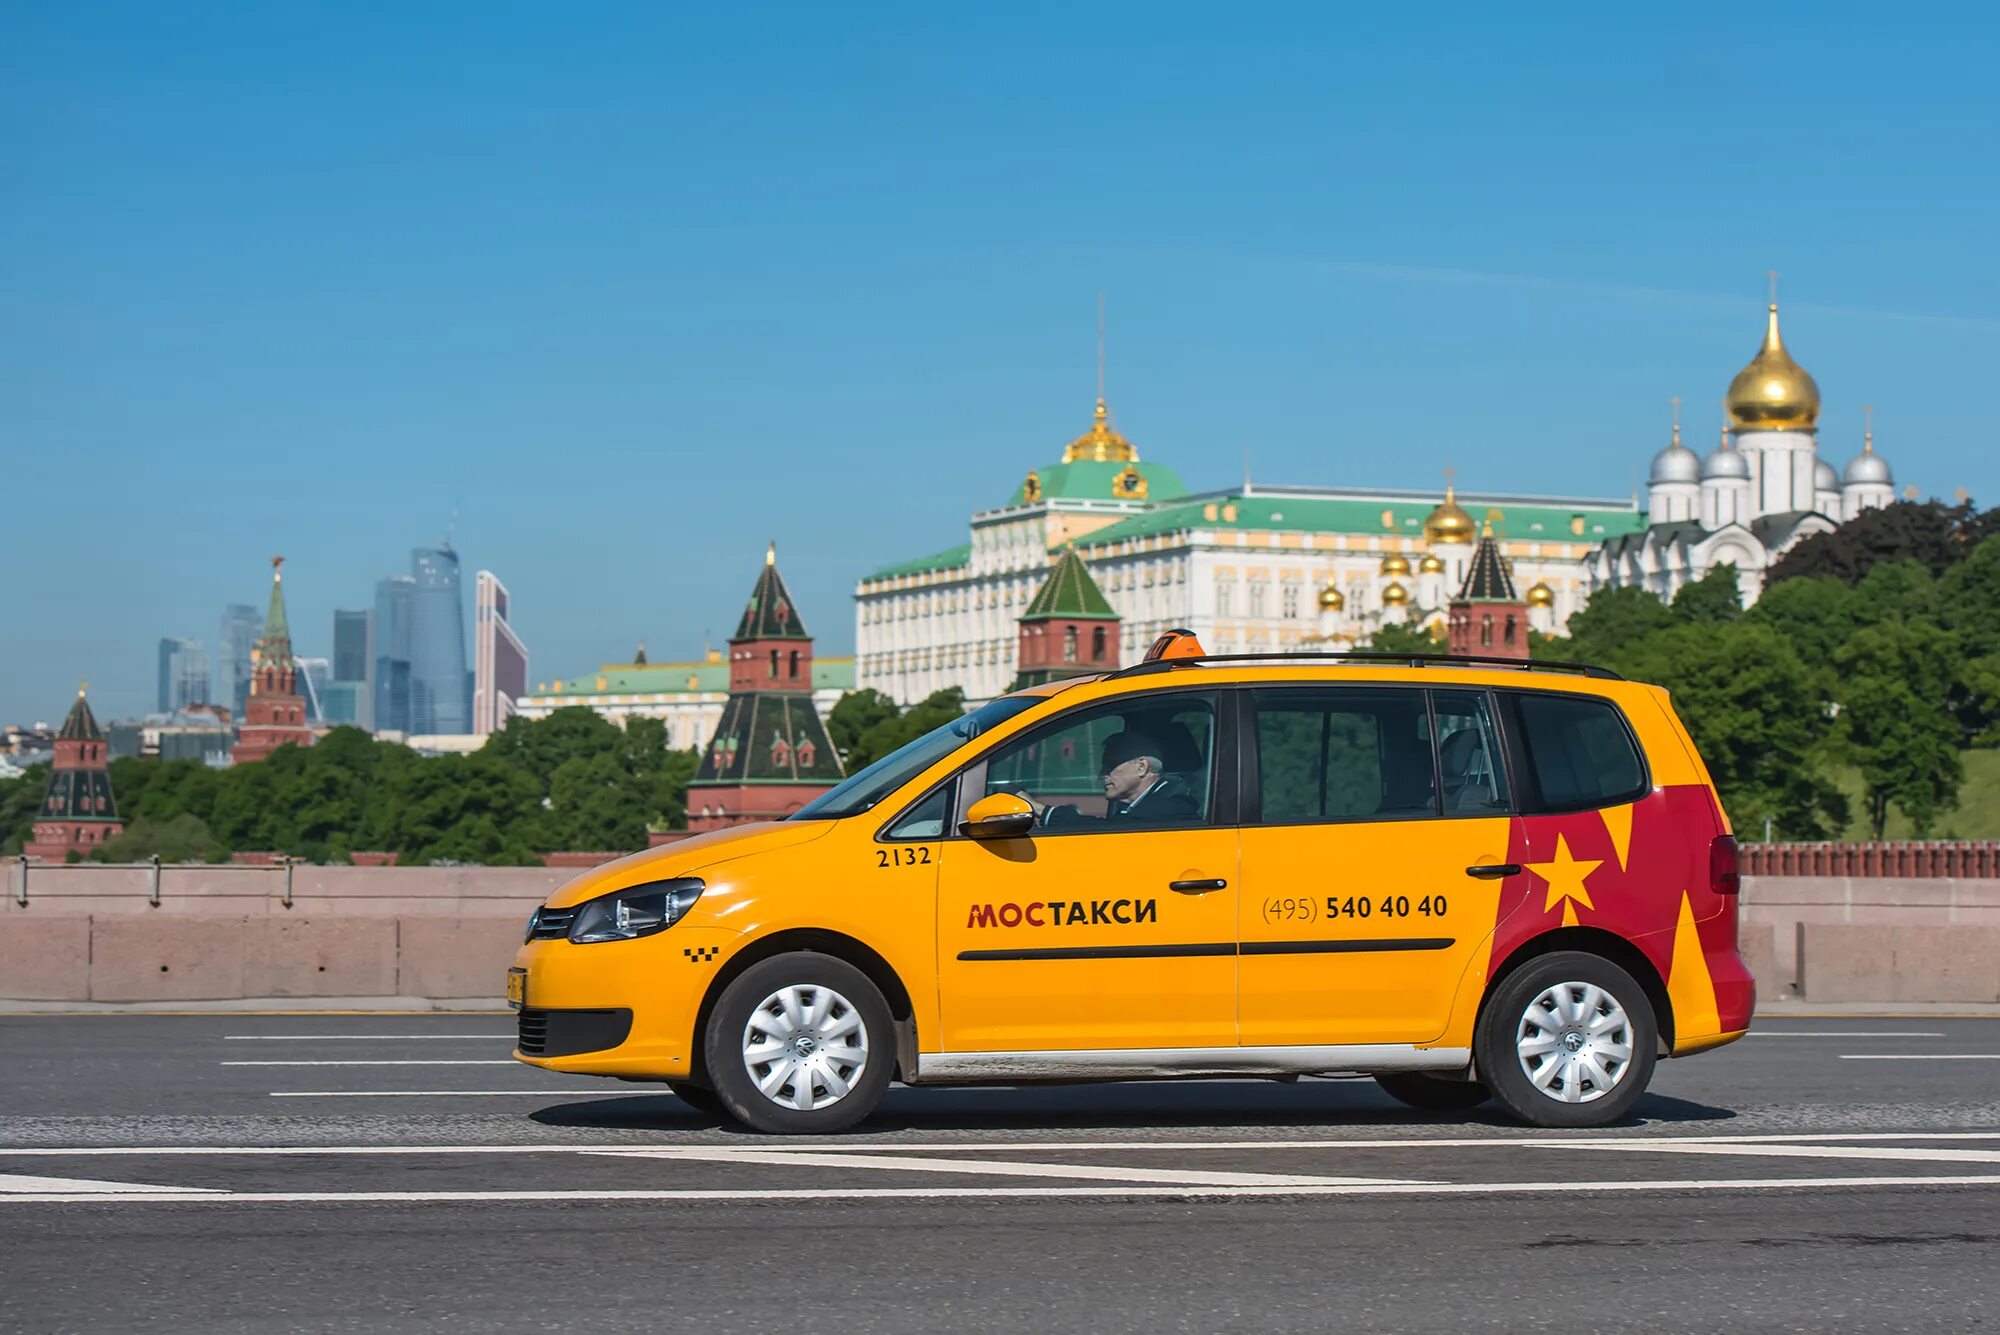 Машины для такси какие года подходят. Маринич МОСТАКСИ. Московское такси. Микроавтобус Фольксваген в МОСТАКСИ.